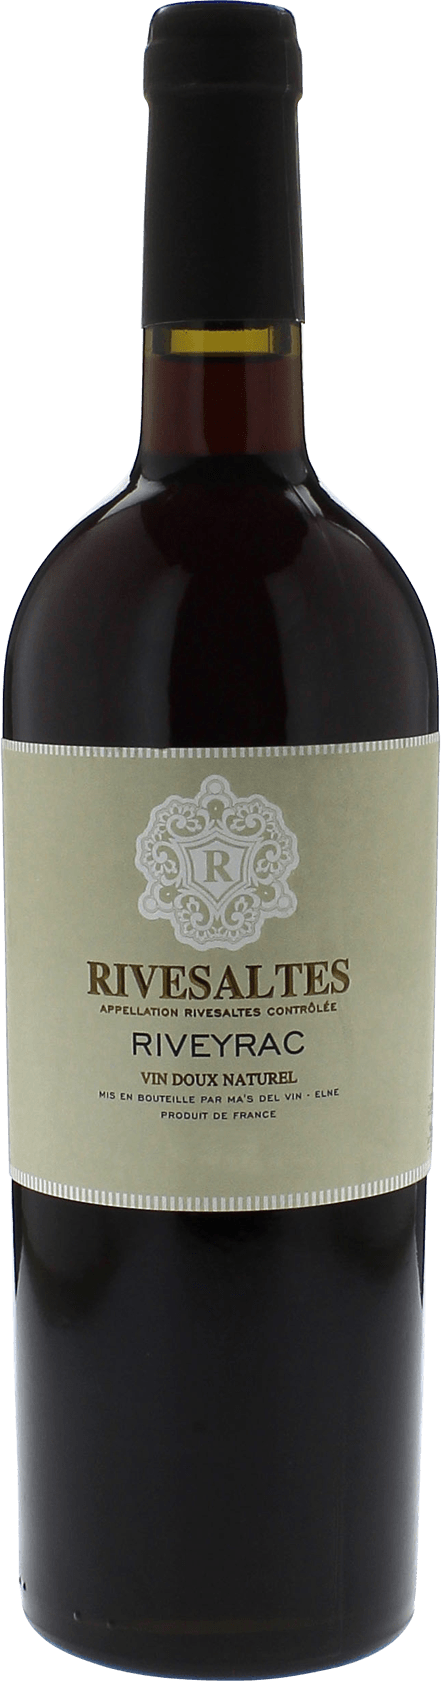 Rivesaltes riveyrac cuve des aigles 1965 Vin doux naturel Rivesaltes, Vin doux naturel